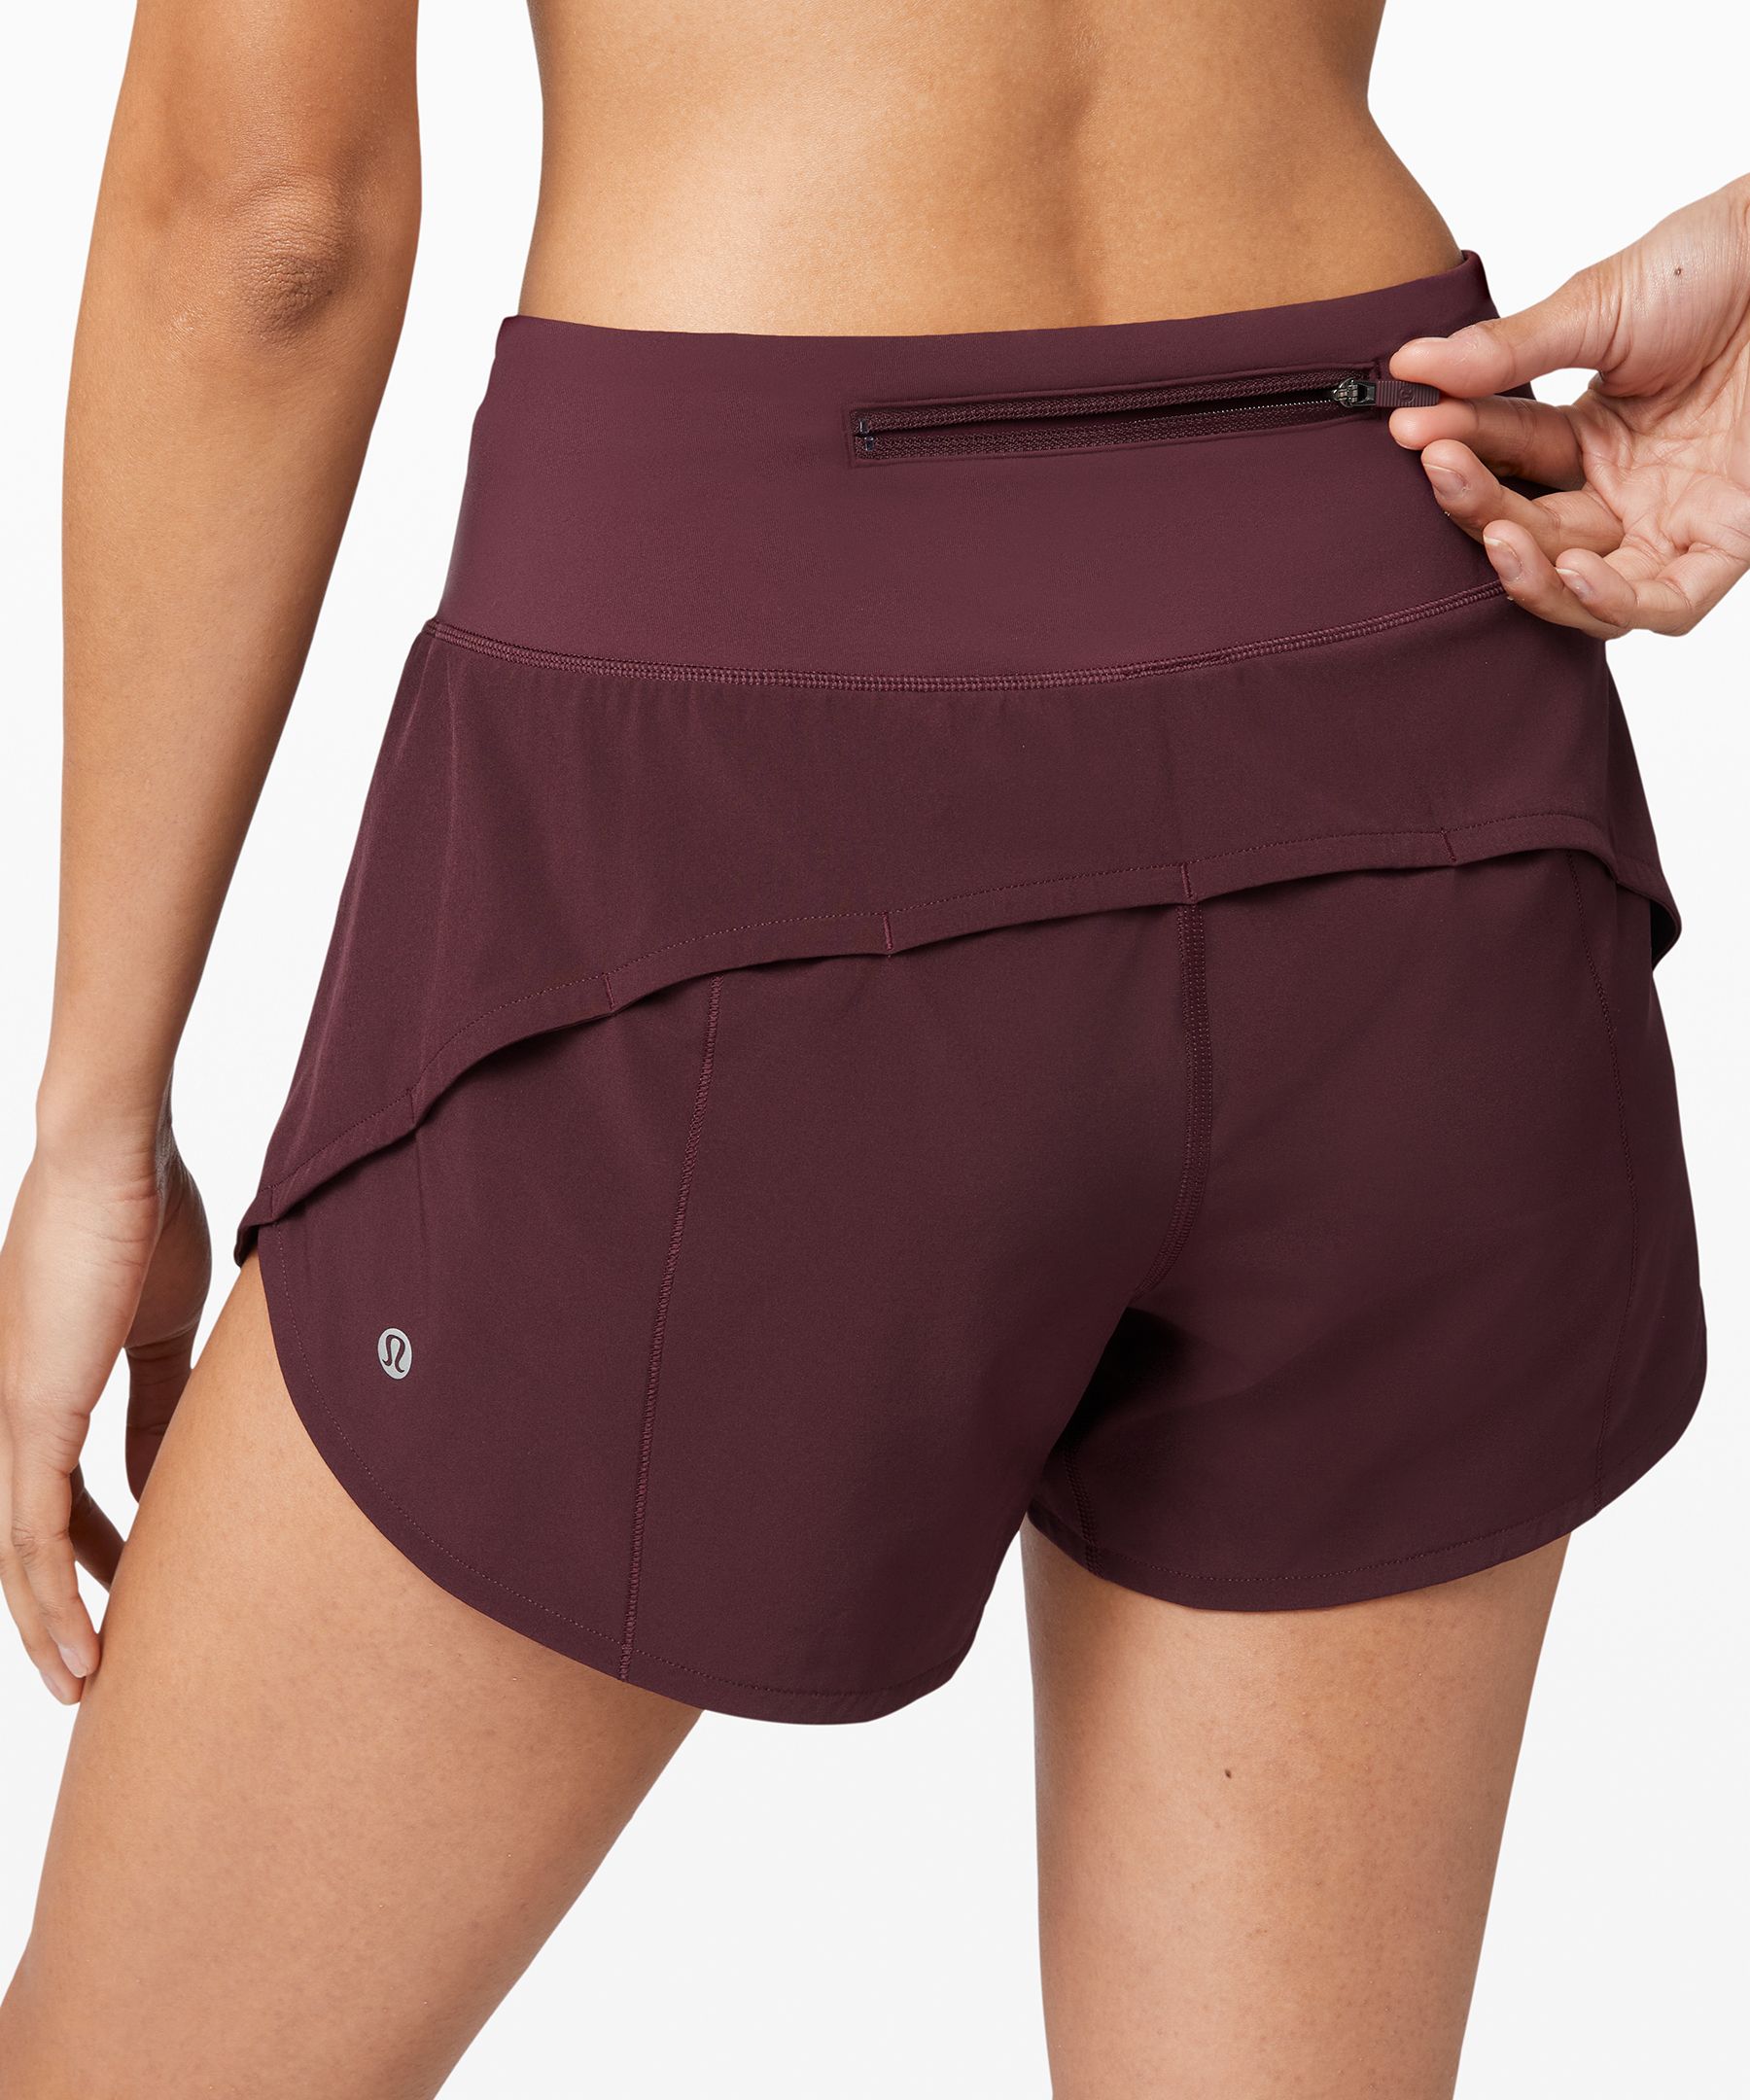 maroon lululemon shorts